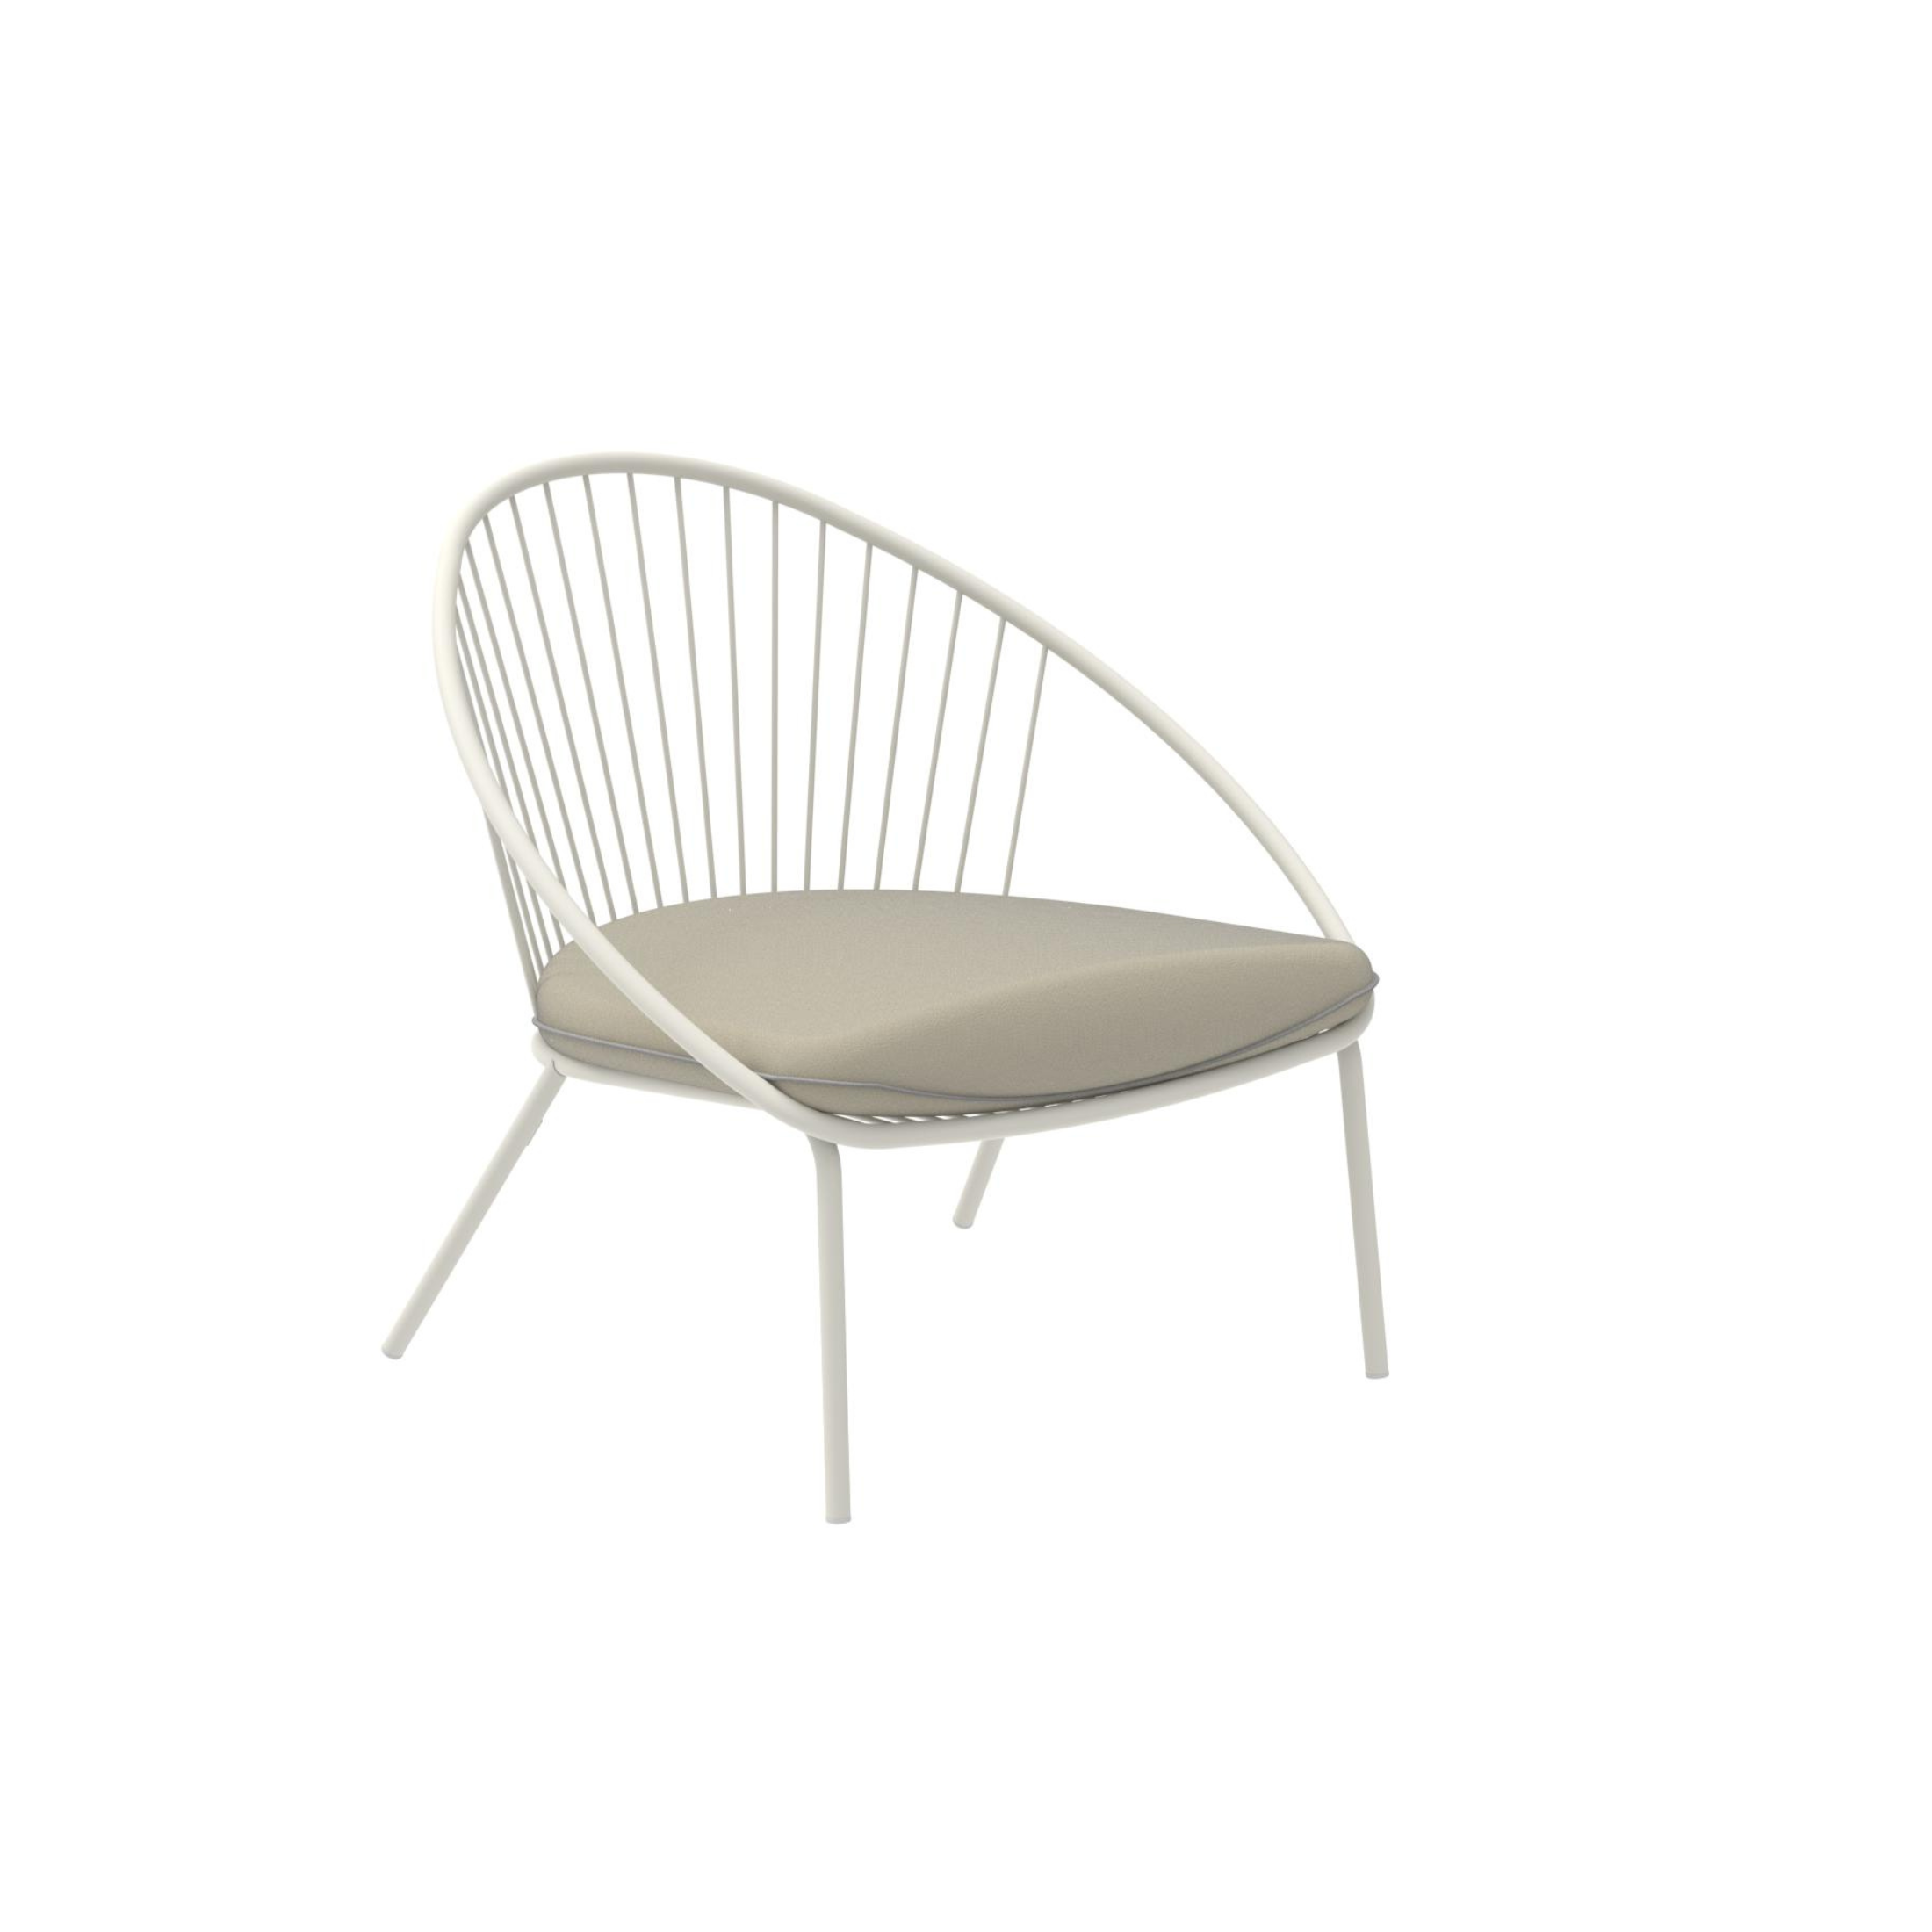 Fauteuil bas de jardin en métal "Aria" chaise longue empilable 82x86 cm 87h